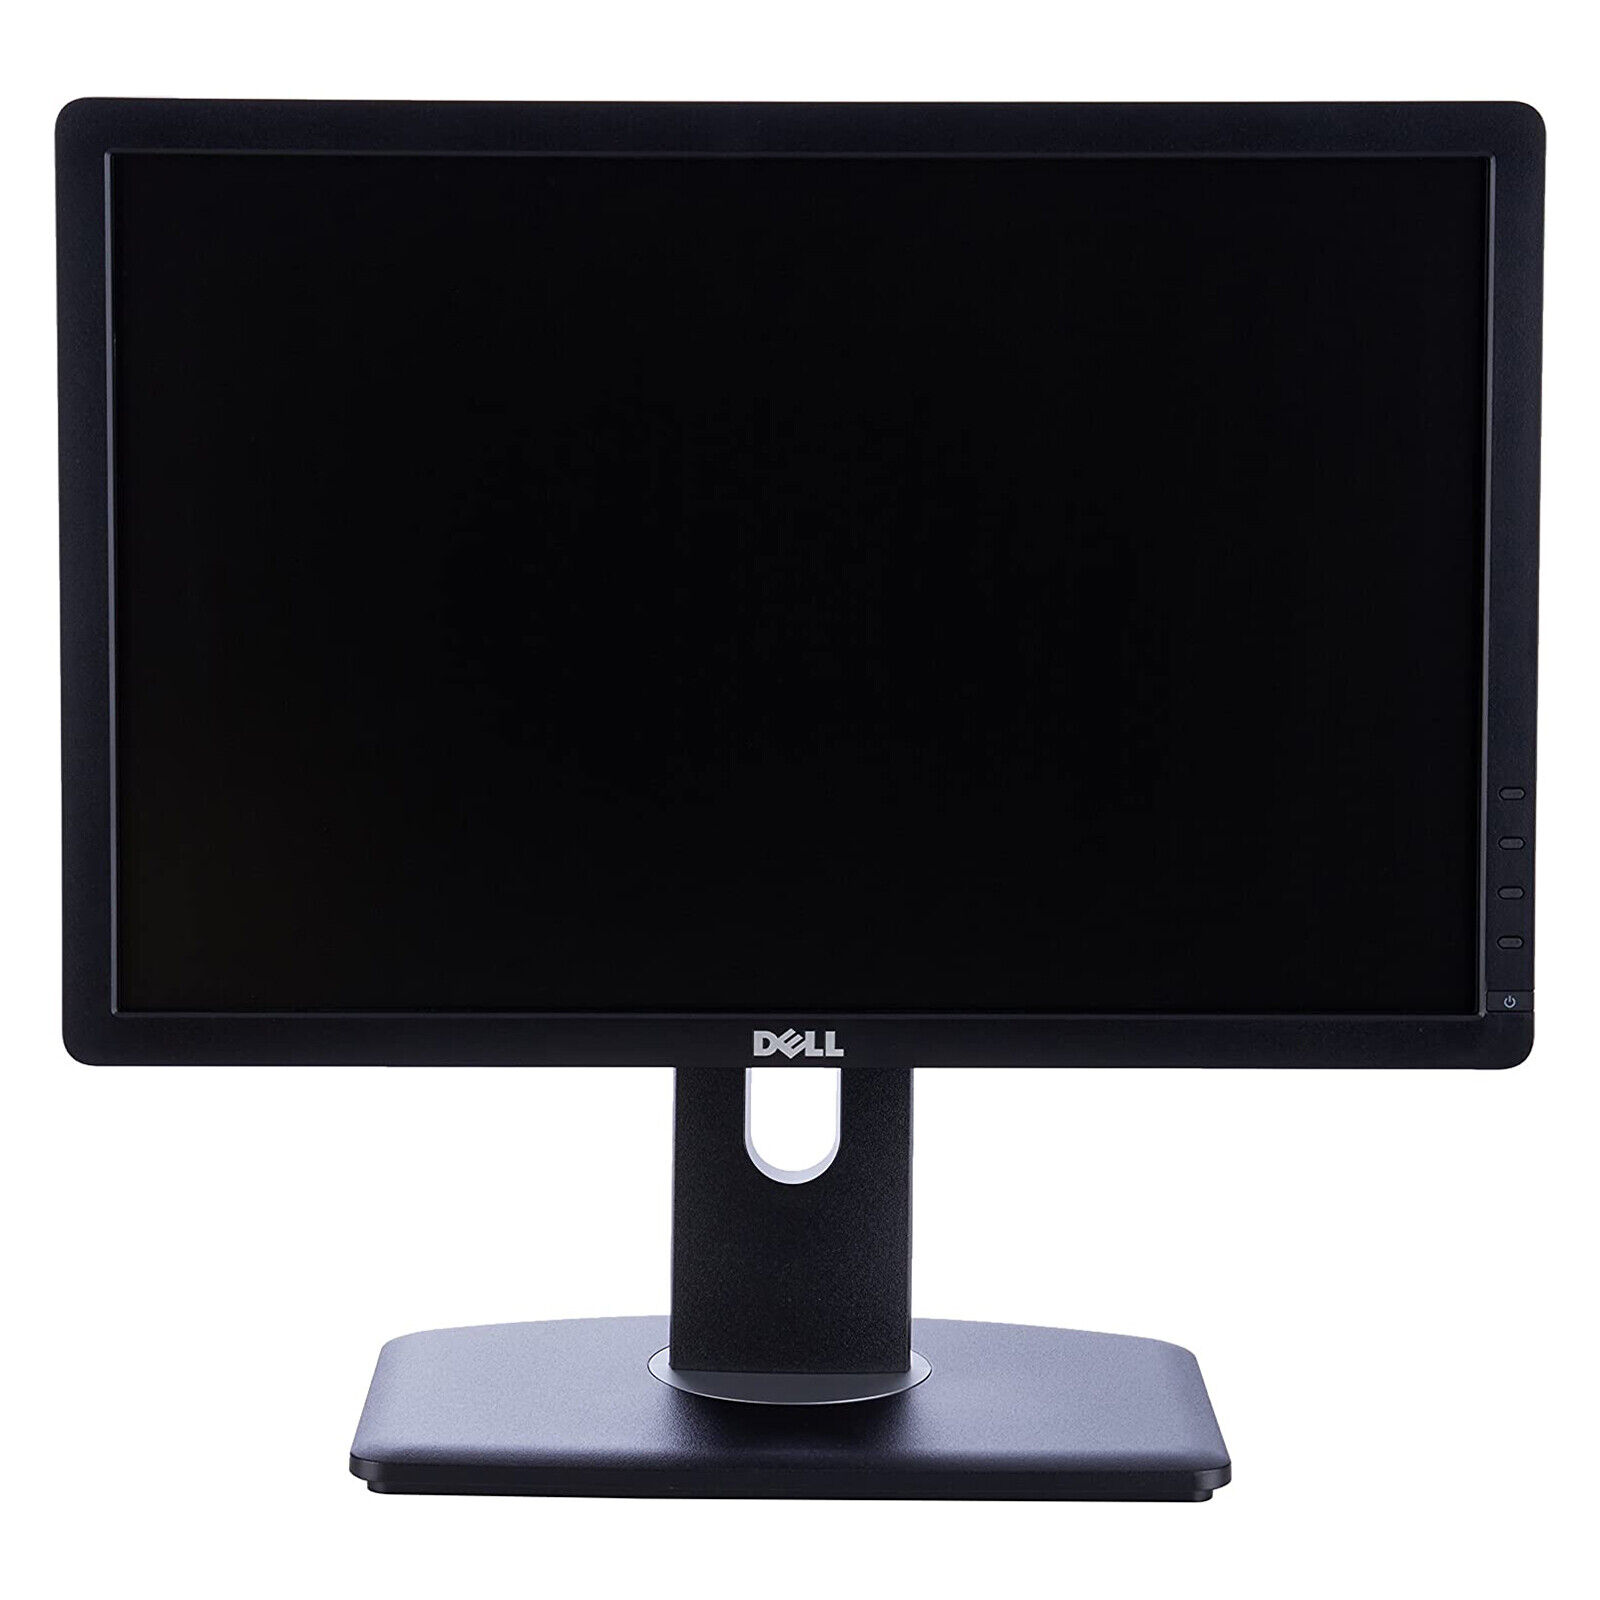 Dell Professional 19” 1440 x 900 Widescreen LCD Monitor DVI VGA P1913b - GRADE A